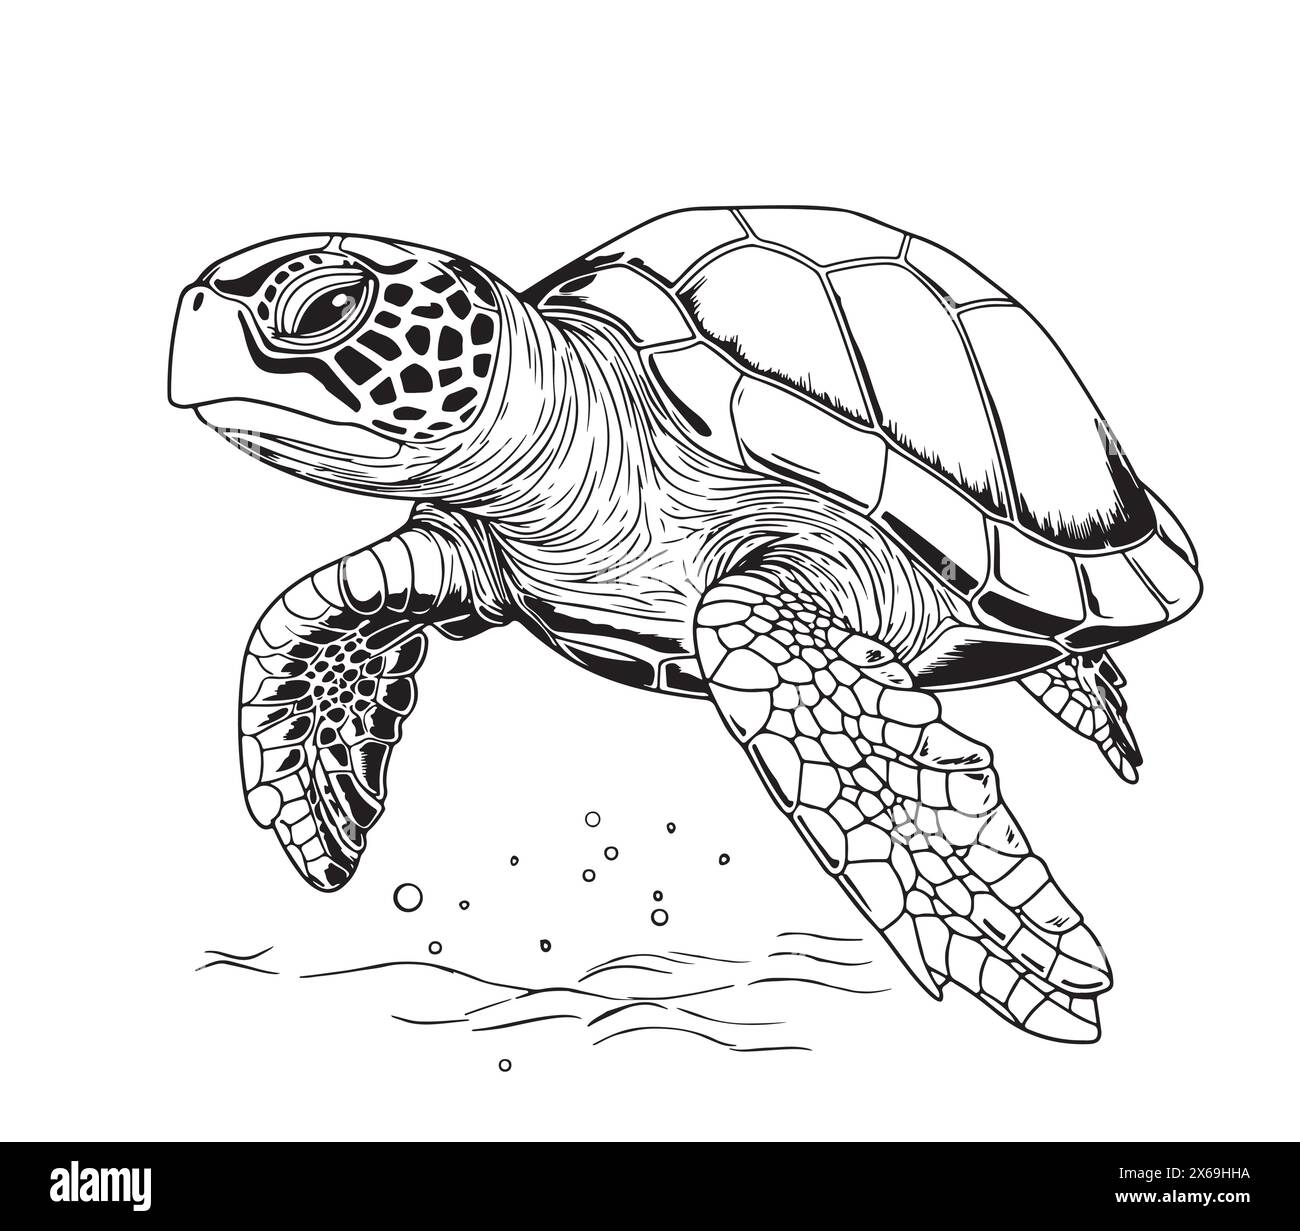 Tortue de mer dessin de style gravure dessiné à la main animaux sous-marins illustration vectorielle. Illustration de Vecteur